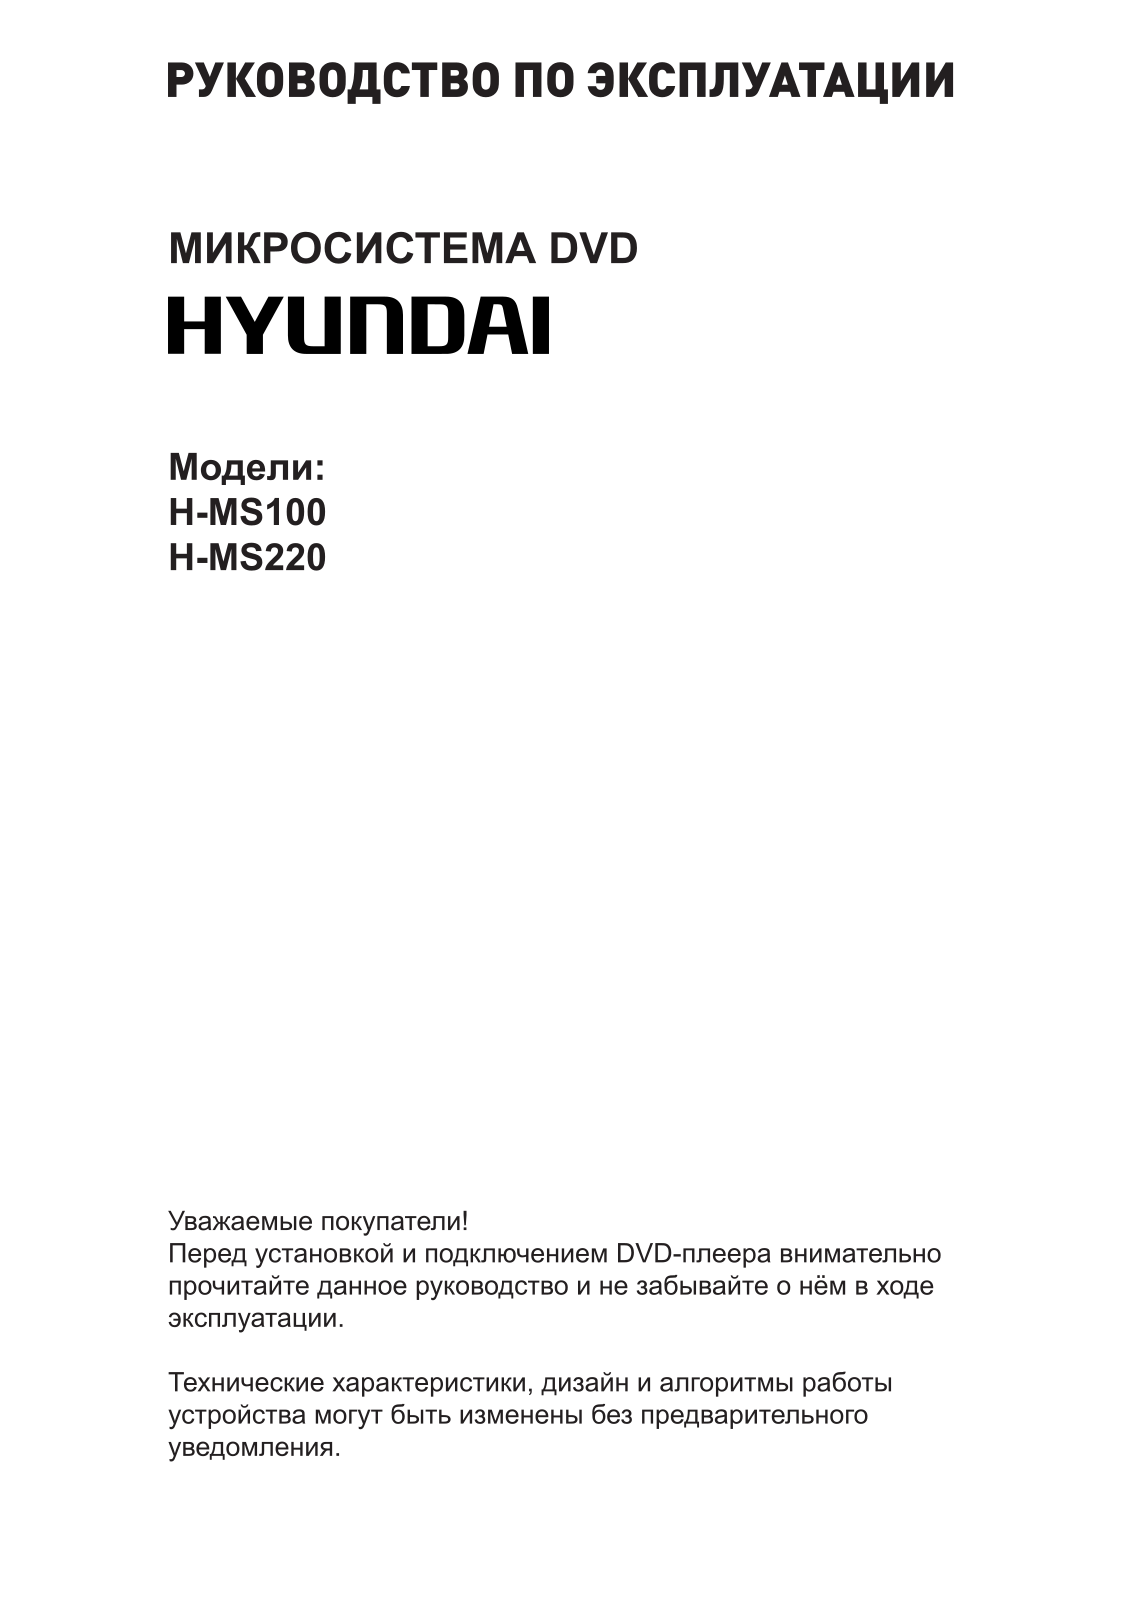 Hyundai H-MS220 User Manual